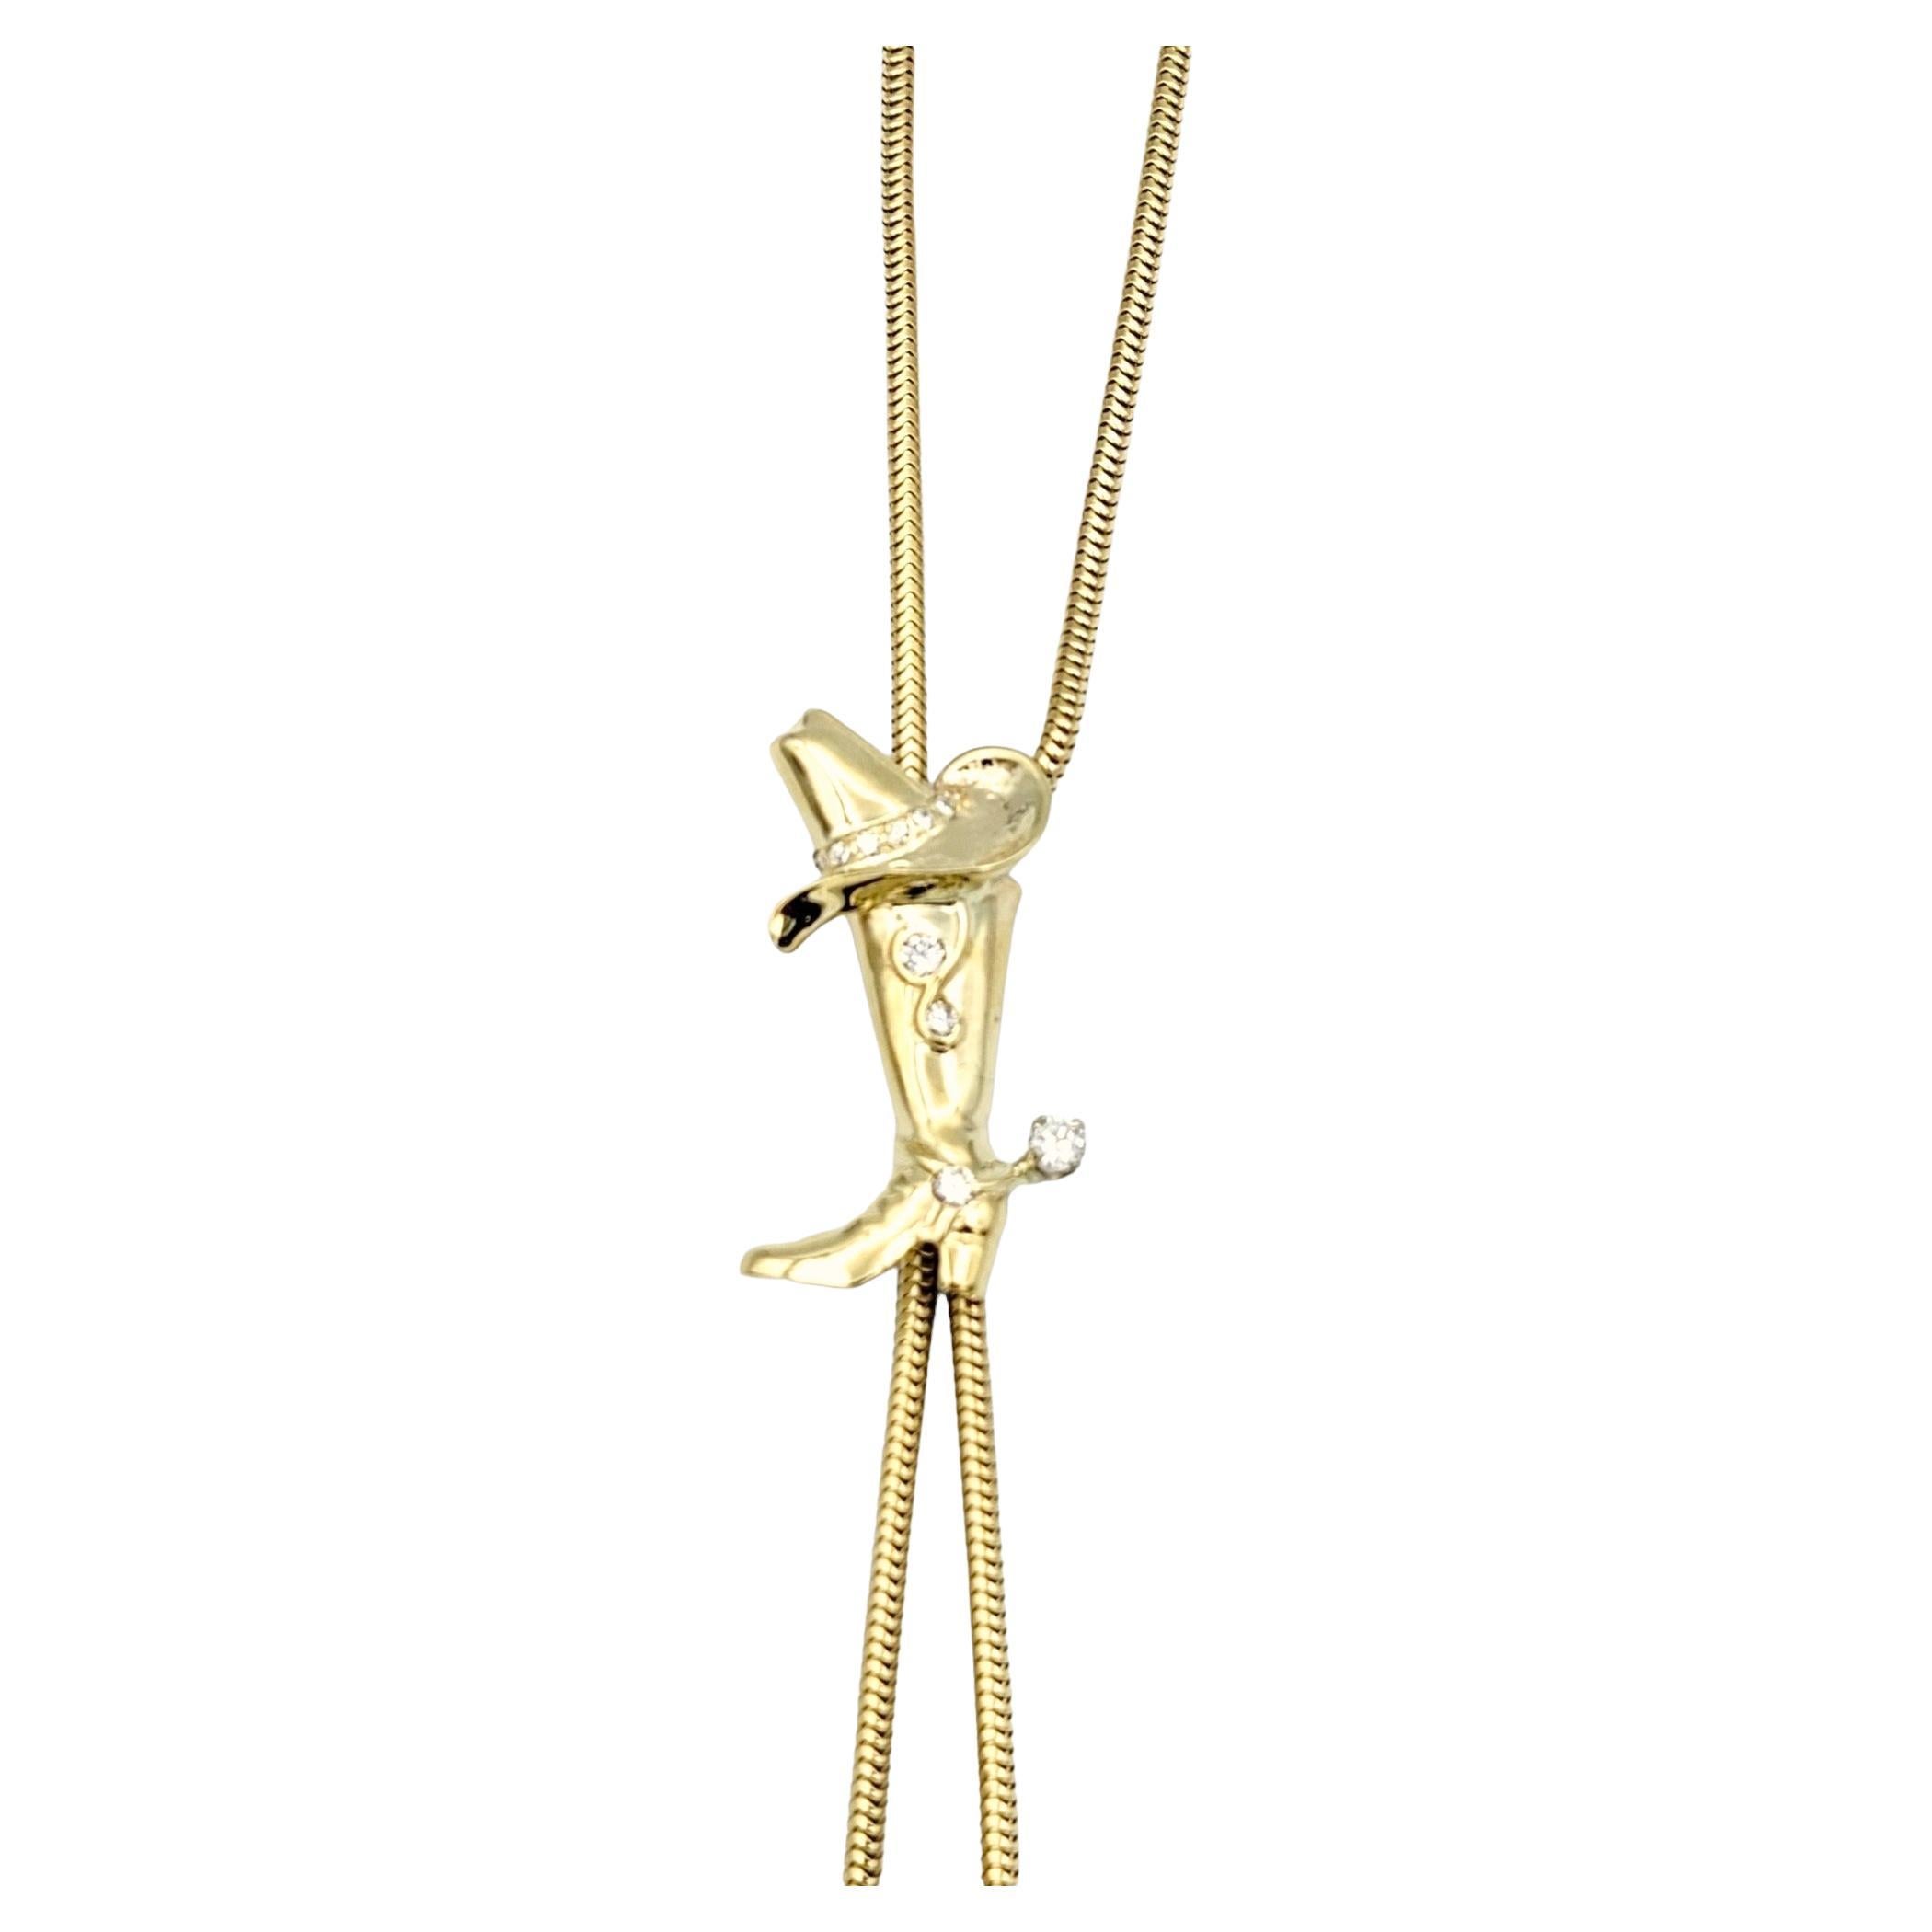 Lassen Sie sich von der Abenteuerlust und dem rustikalen Charme dieser einzigartigen goldenen Lariat-Halskette anstecken, die mit dem Flair eines Pferdes und der Eleganz eines Diamanten geschmückt ist. Dieses exquisite Stück fängt die Essenz des